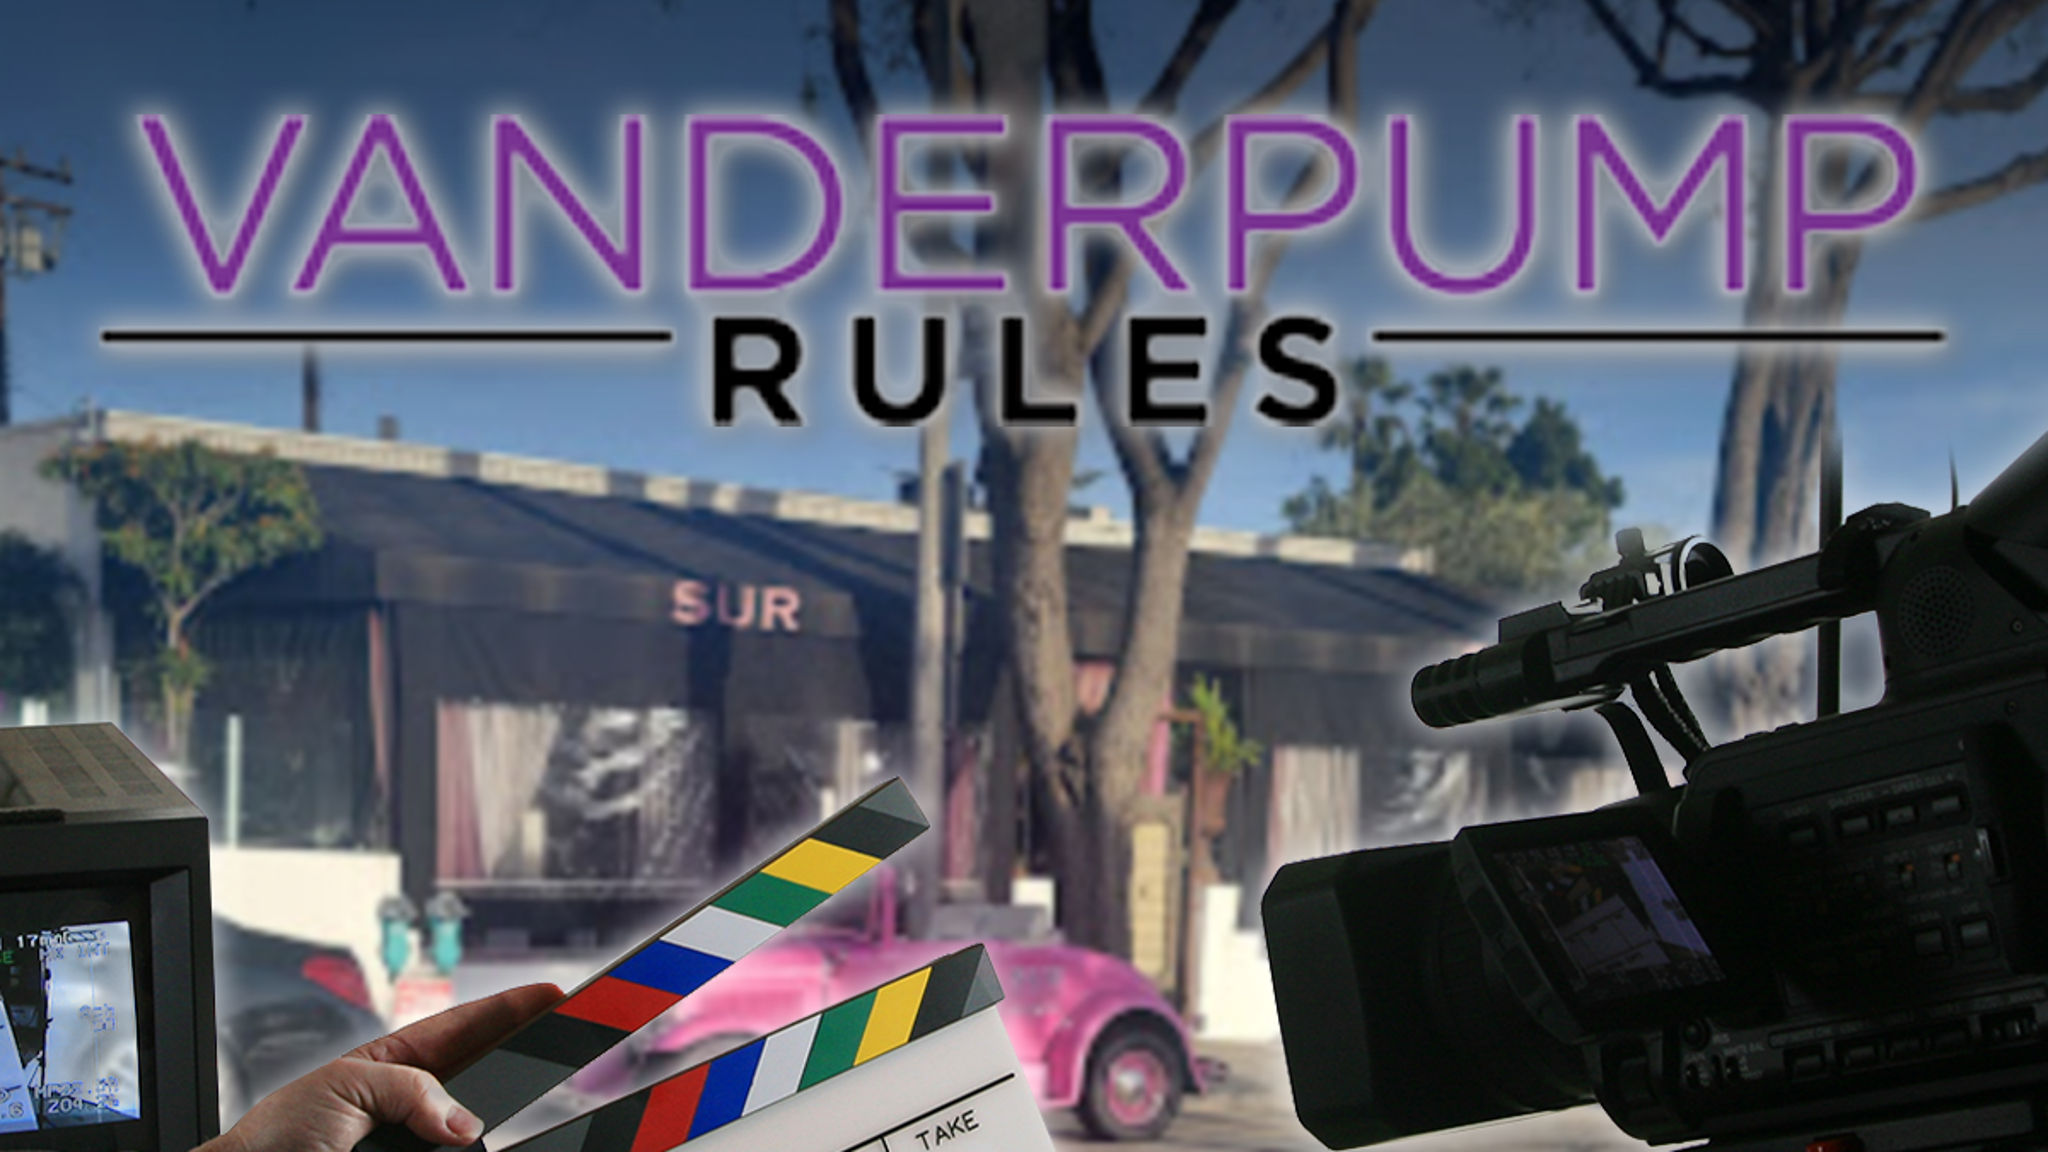 يأخذ فيلم "Vanderpump Rules" فترة توقف قصيرة في الإنتاج ولن يتم تصويره هذا الصيف